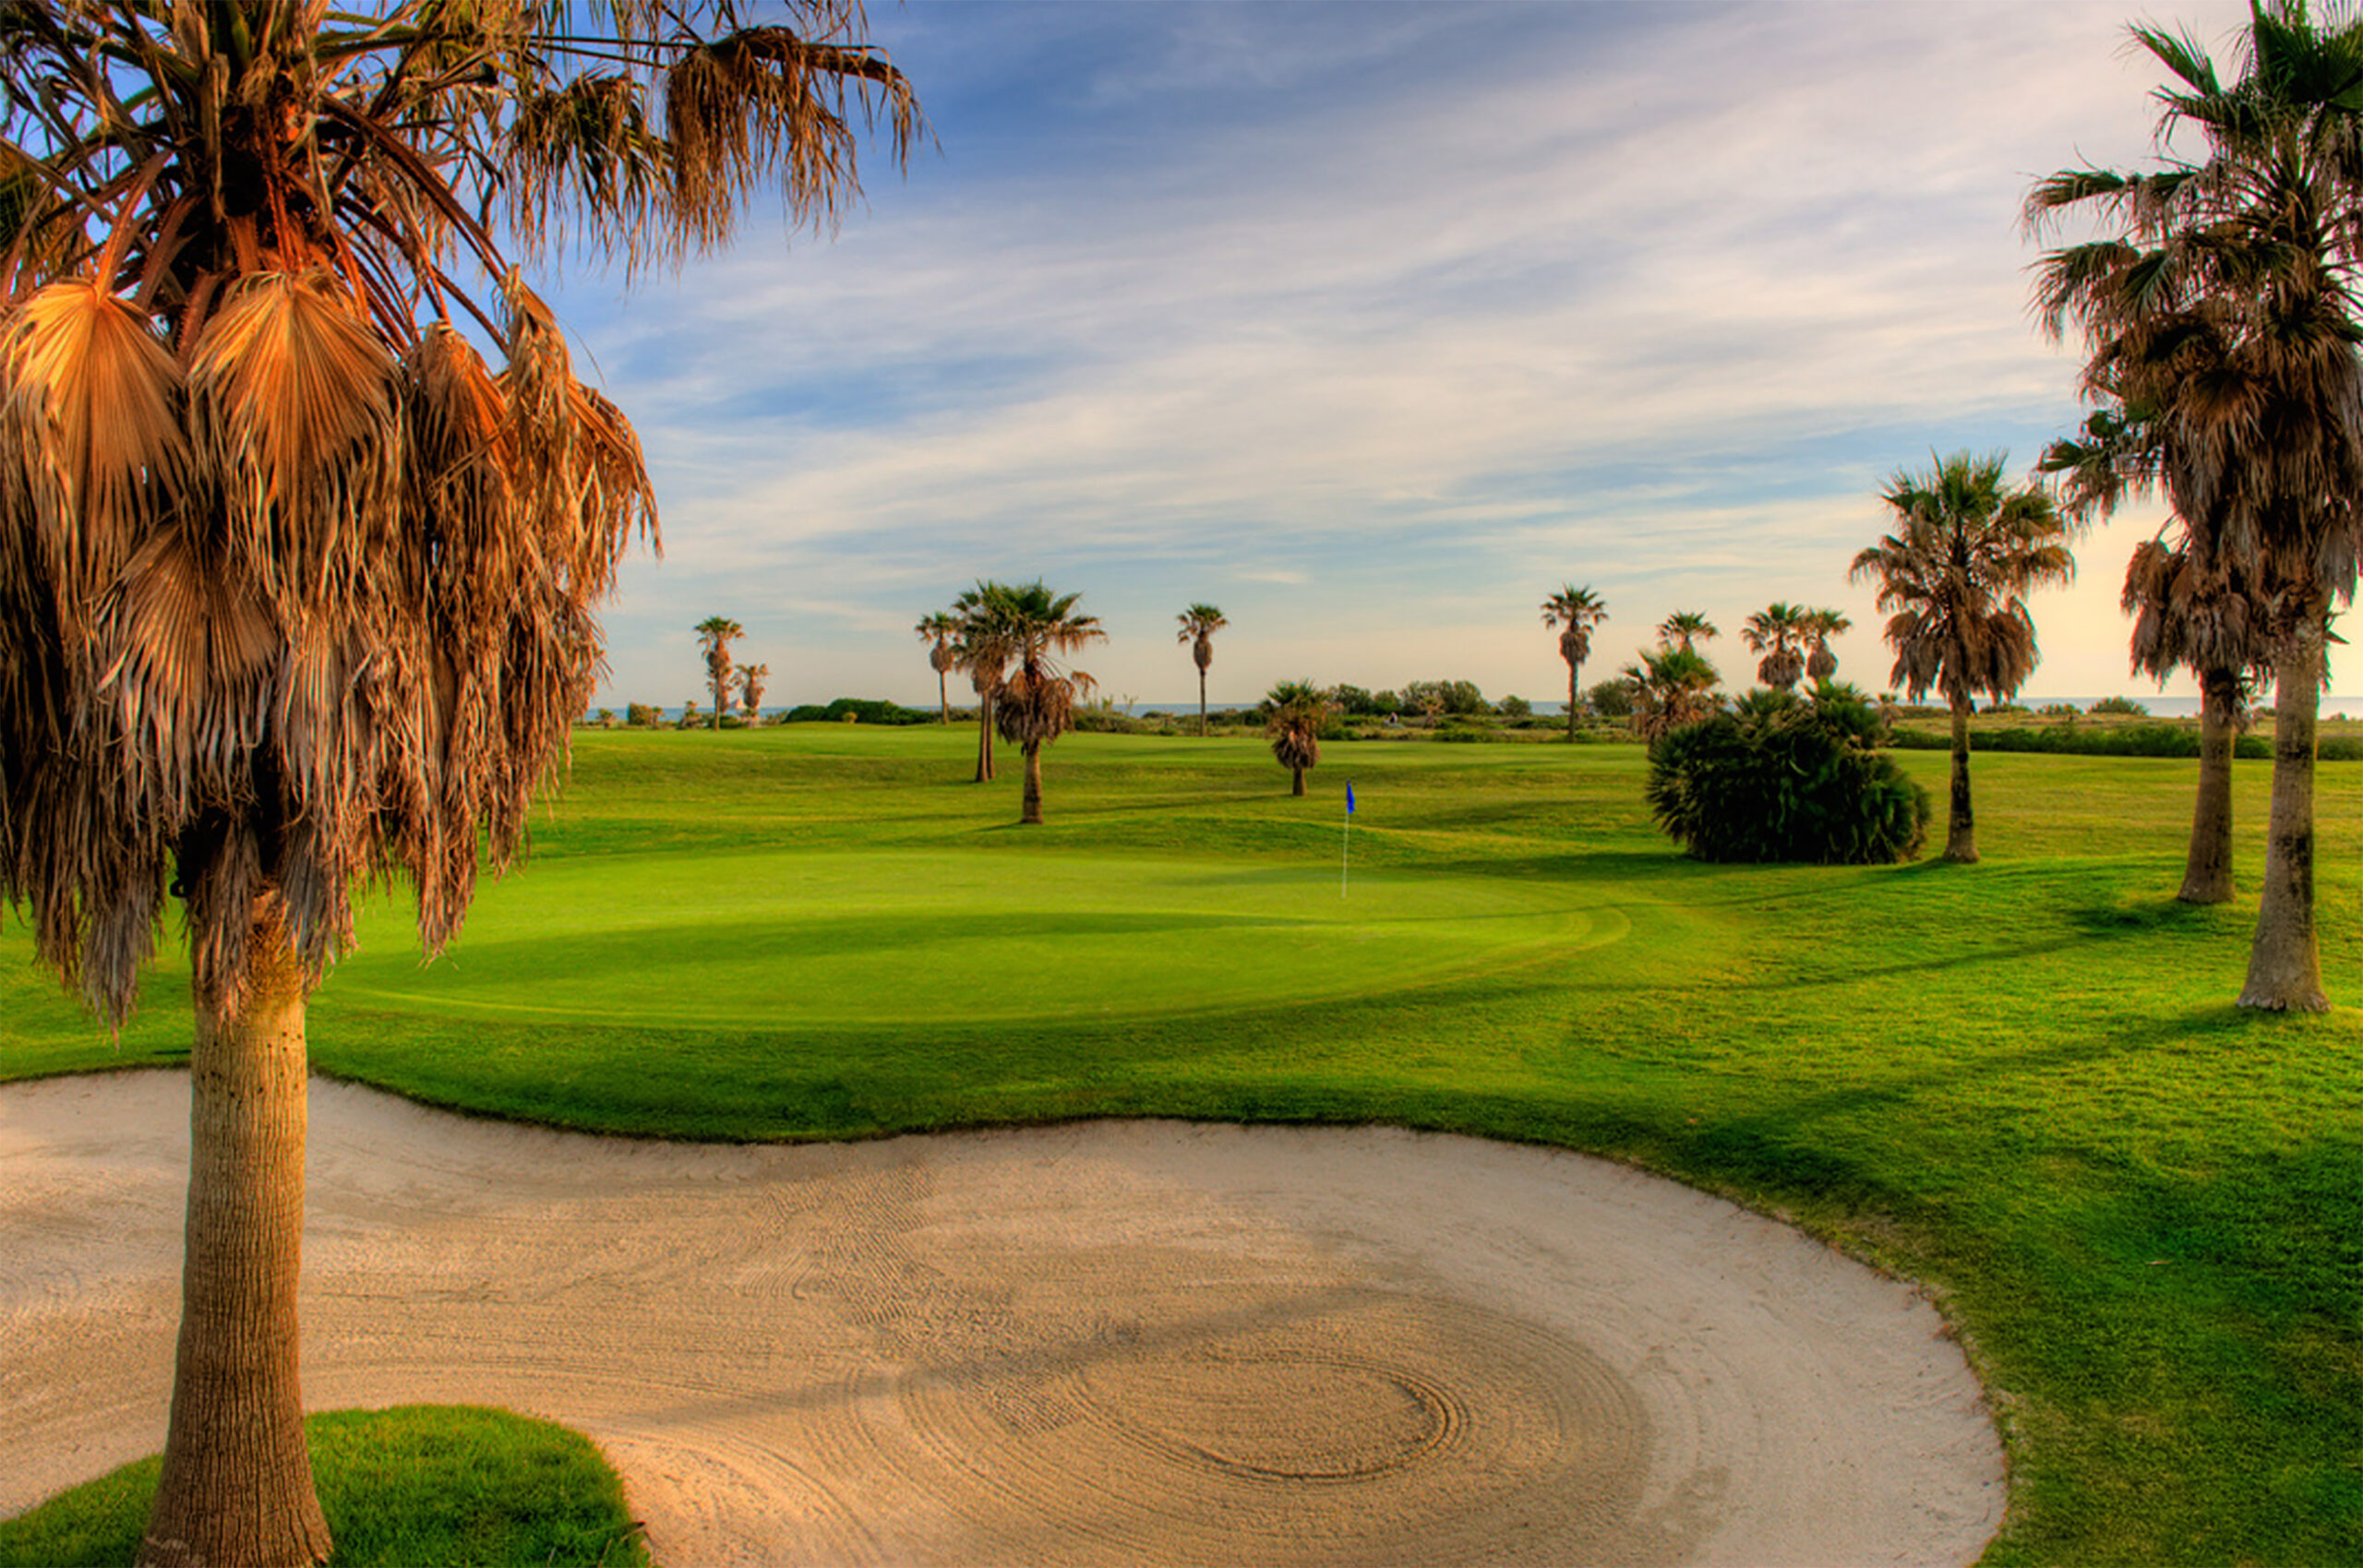 Platzreife Golf Kurs freies Golfspielen inklusive